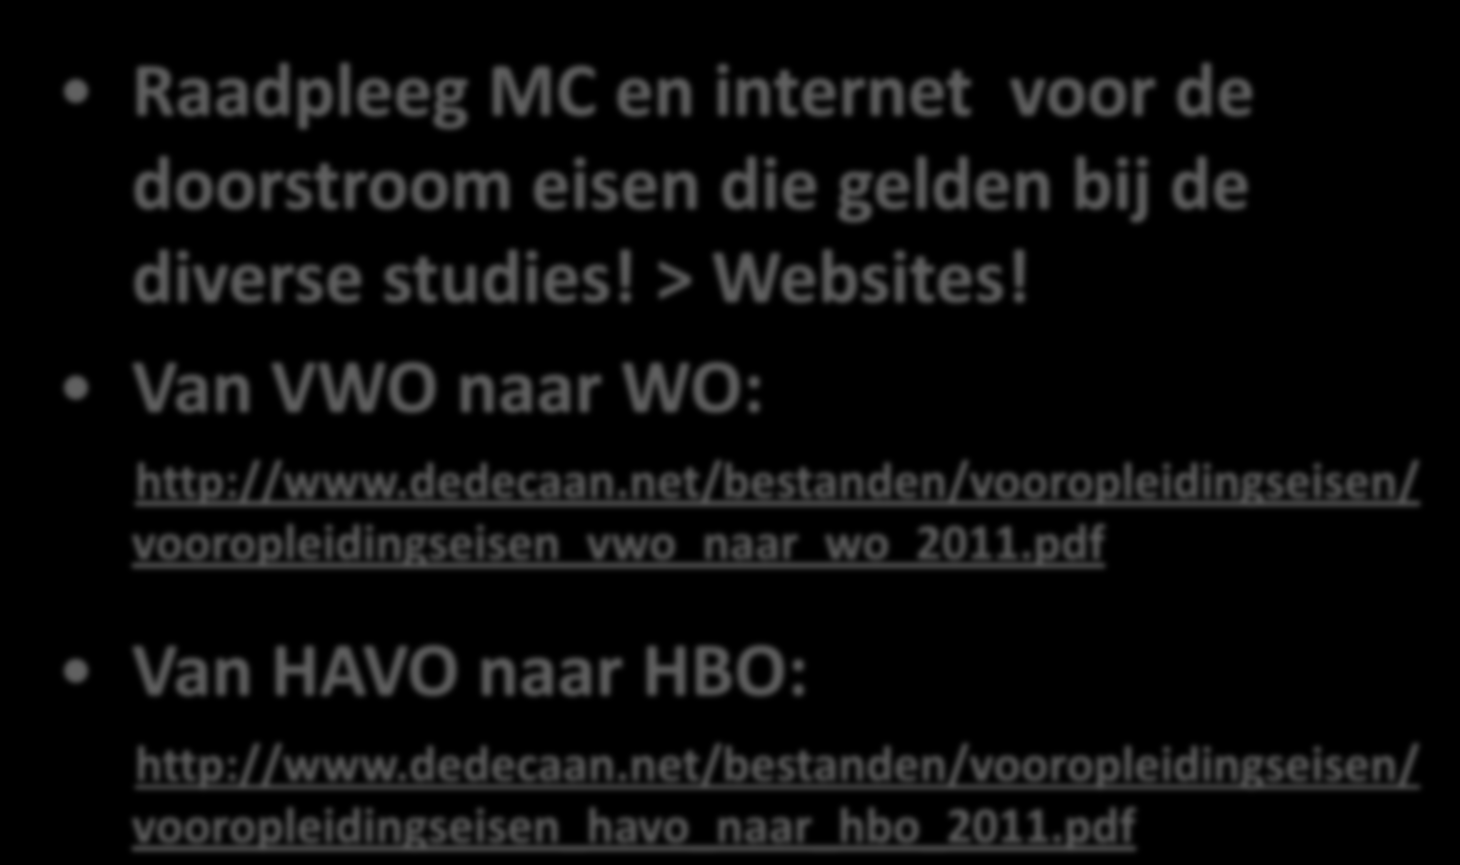 DOORSTROOMEISEN Raadpleeg MC en internet voor de doorstroom eisen die gelden bij de diverse studies! > Websites! Van VWO naar WO: http://www.dedecaan.